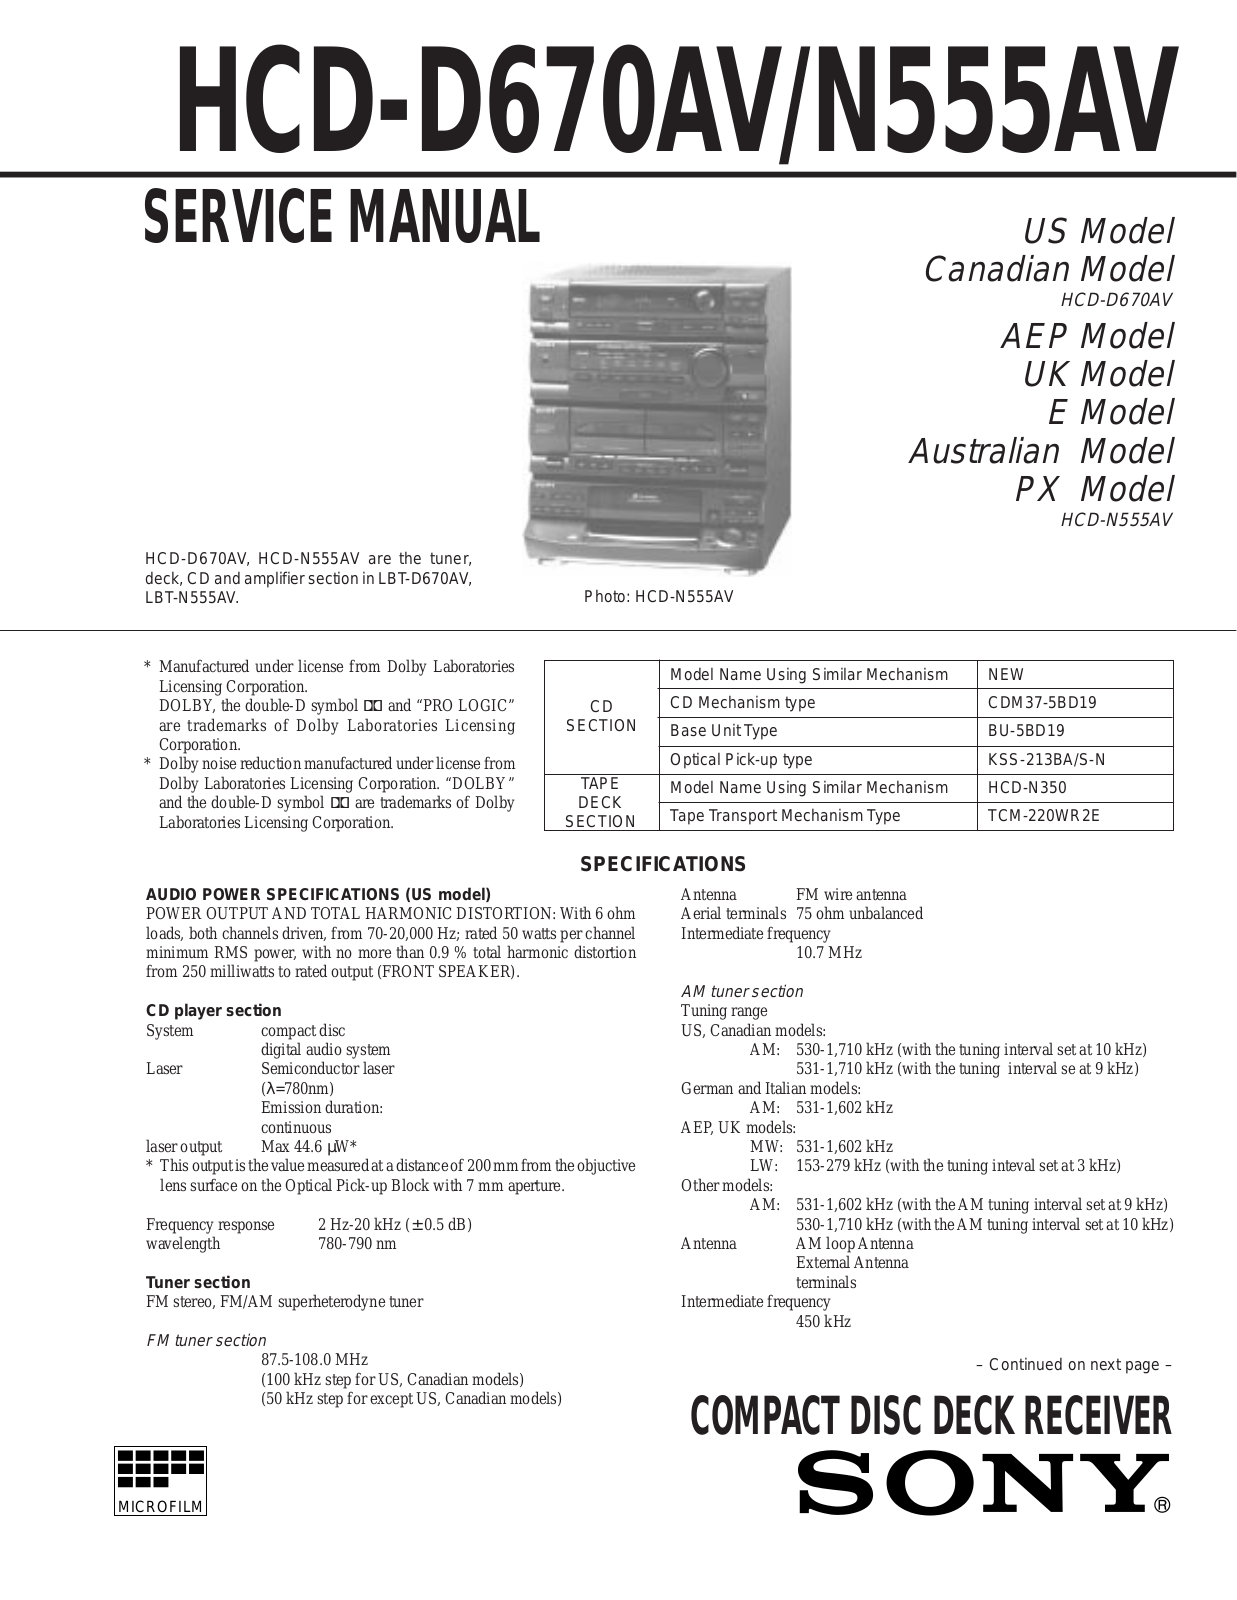 sony HCD-D670AV, HCD-N555AV Service Manual